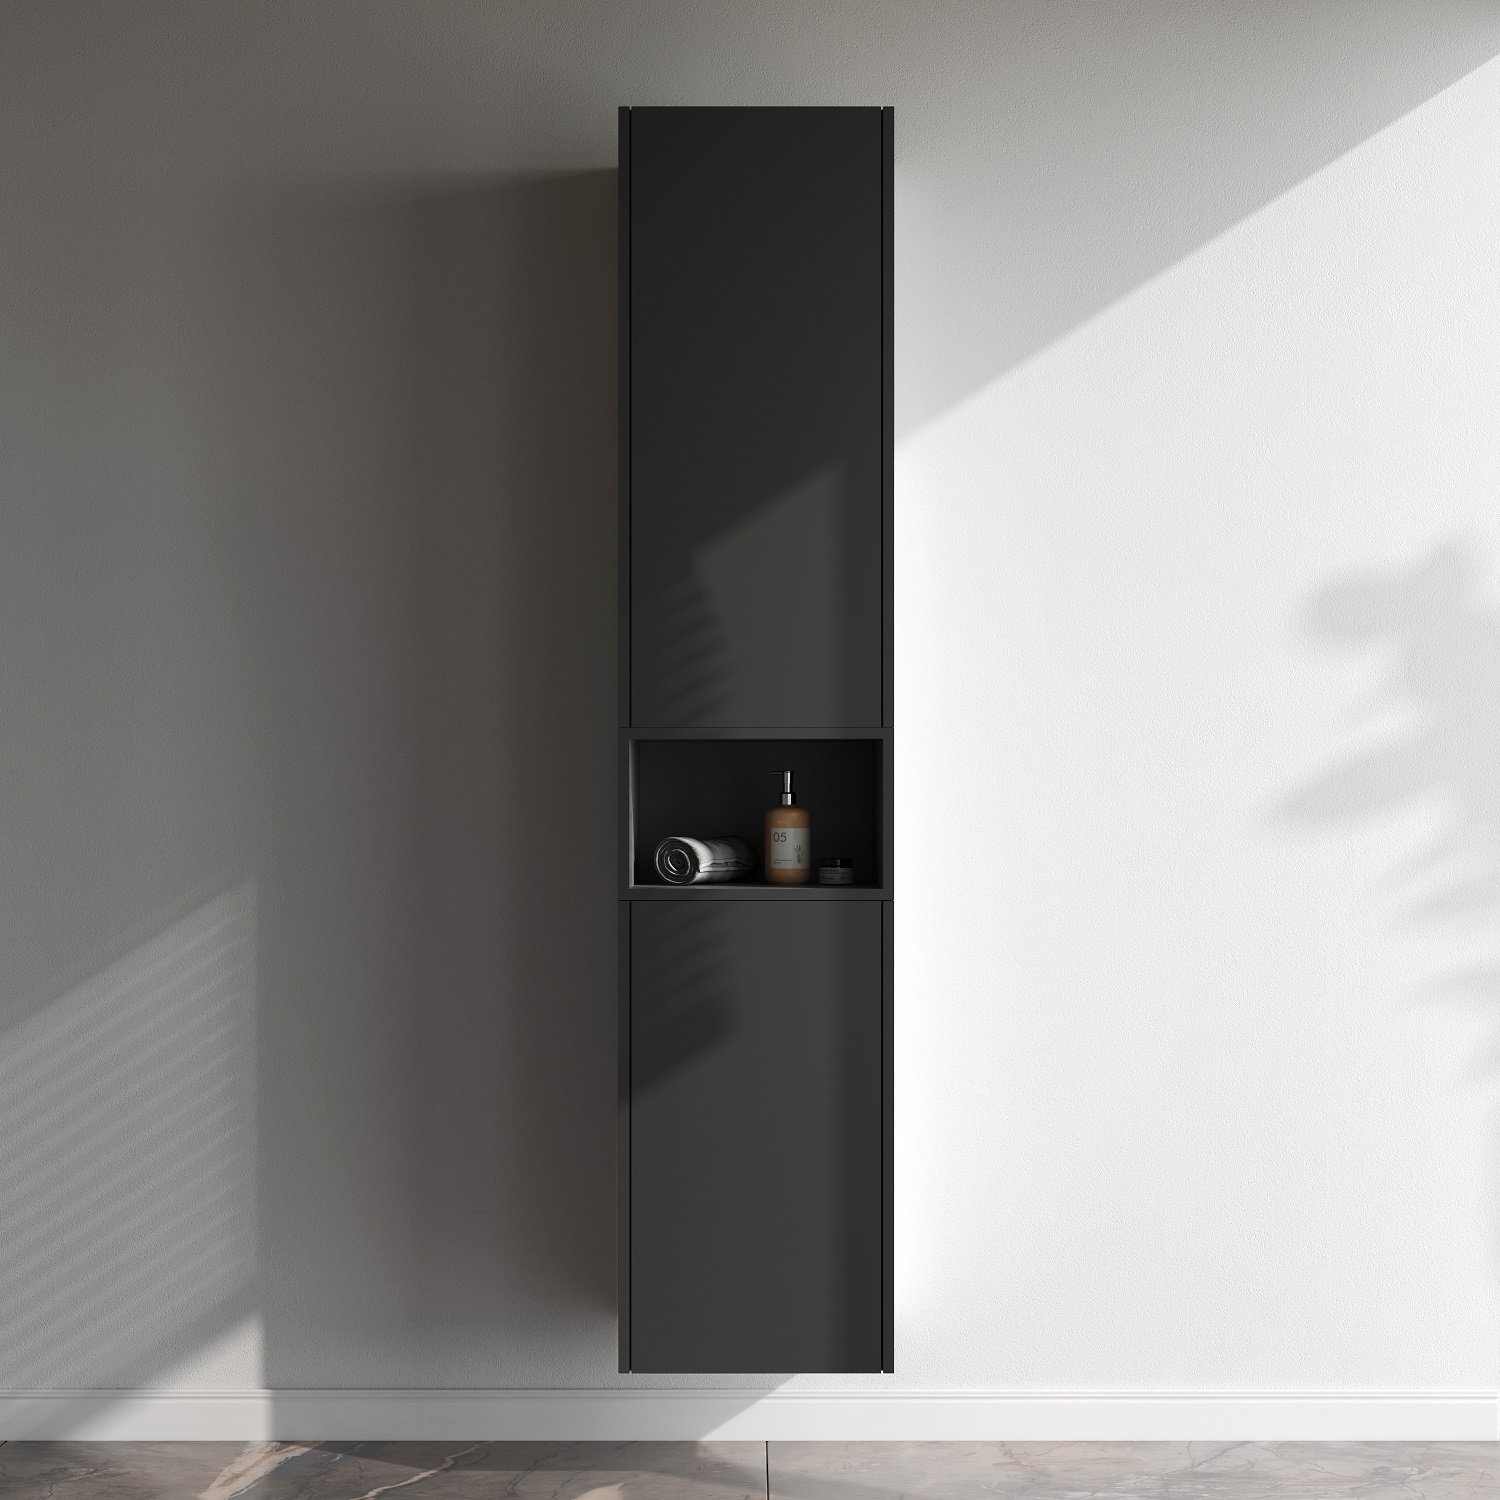 Func open-space для мебели, 40 см, цвет черный матовый